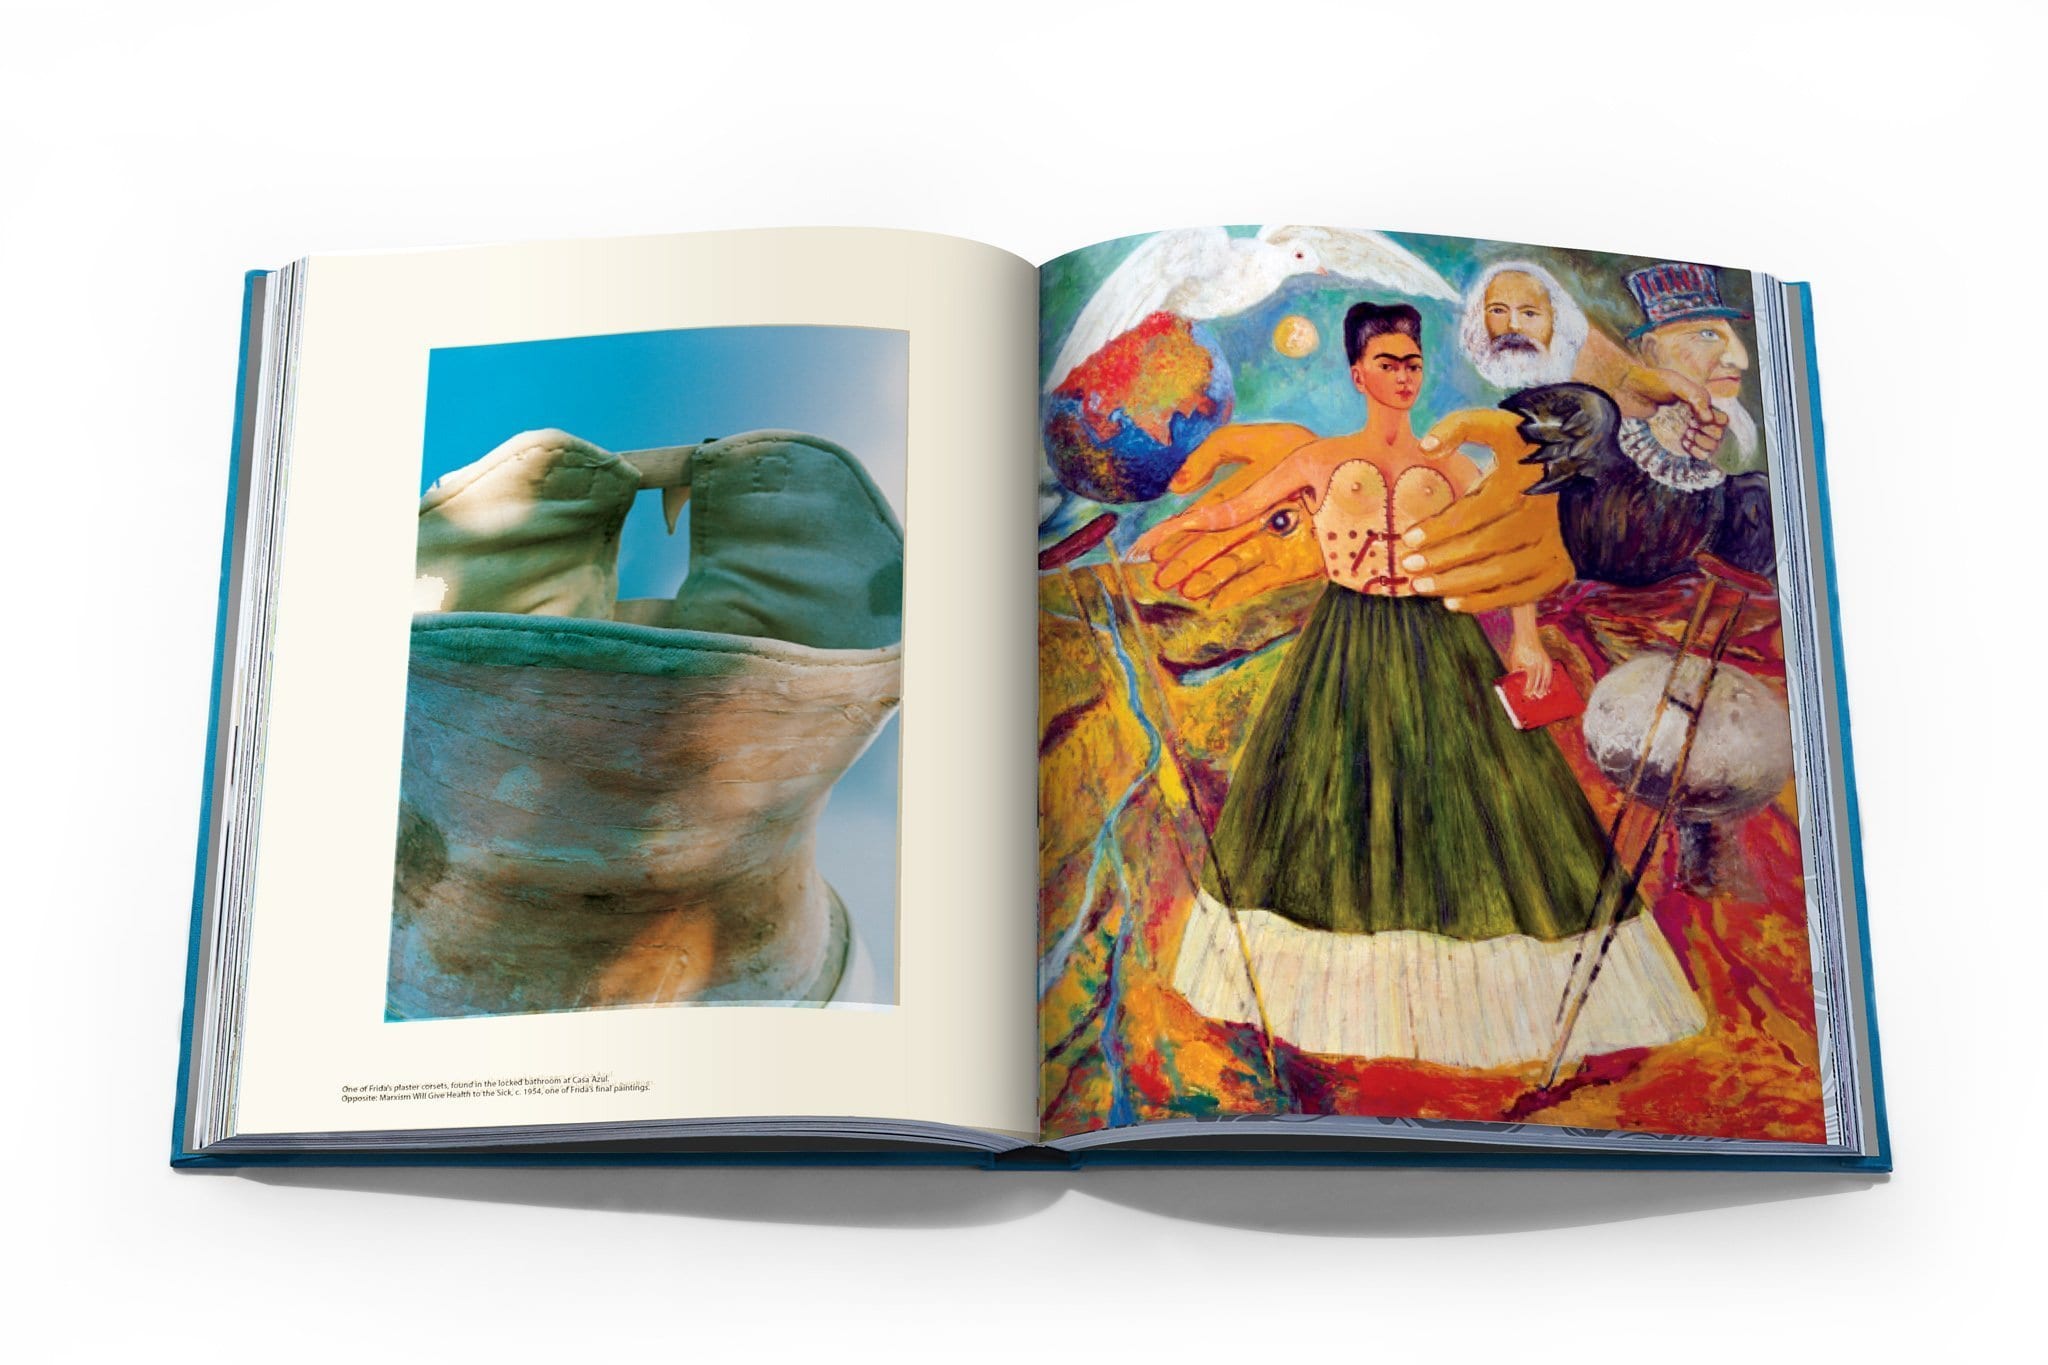 Assouline Frida Kahlo: moda como el arte de ser